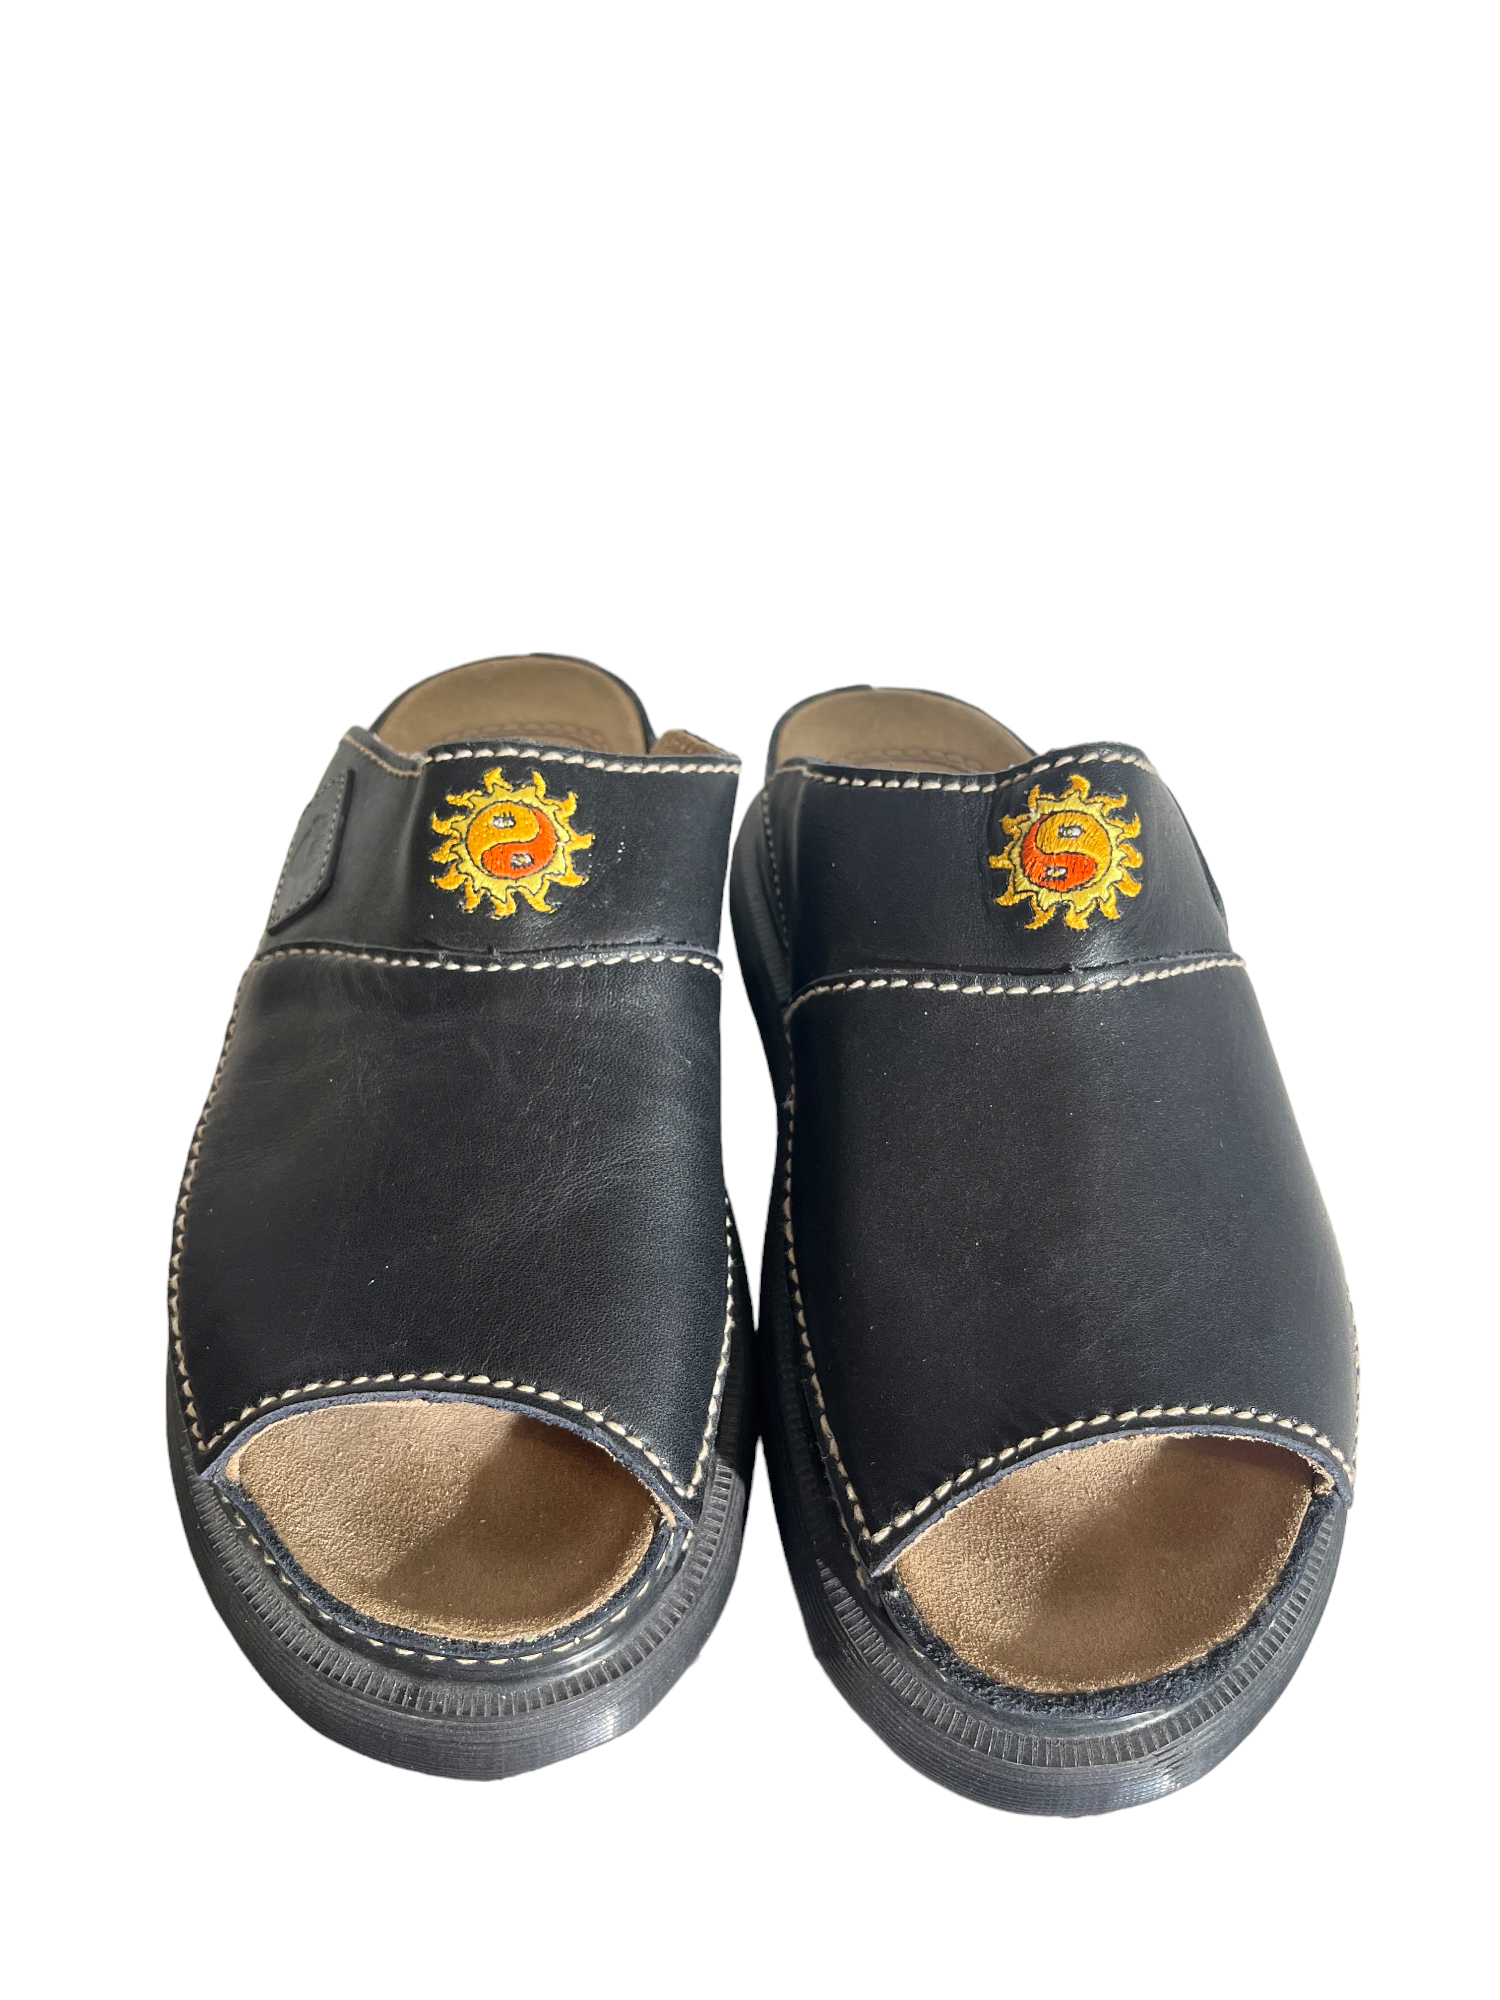 Yinyang Sun Doc Marten Platform Sandals